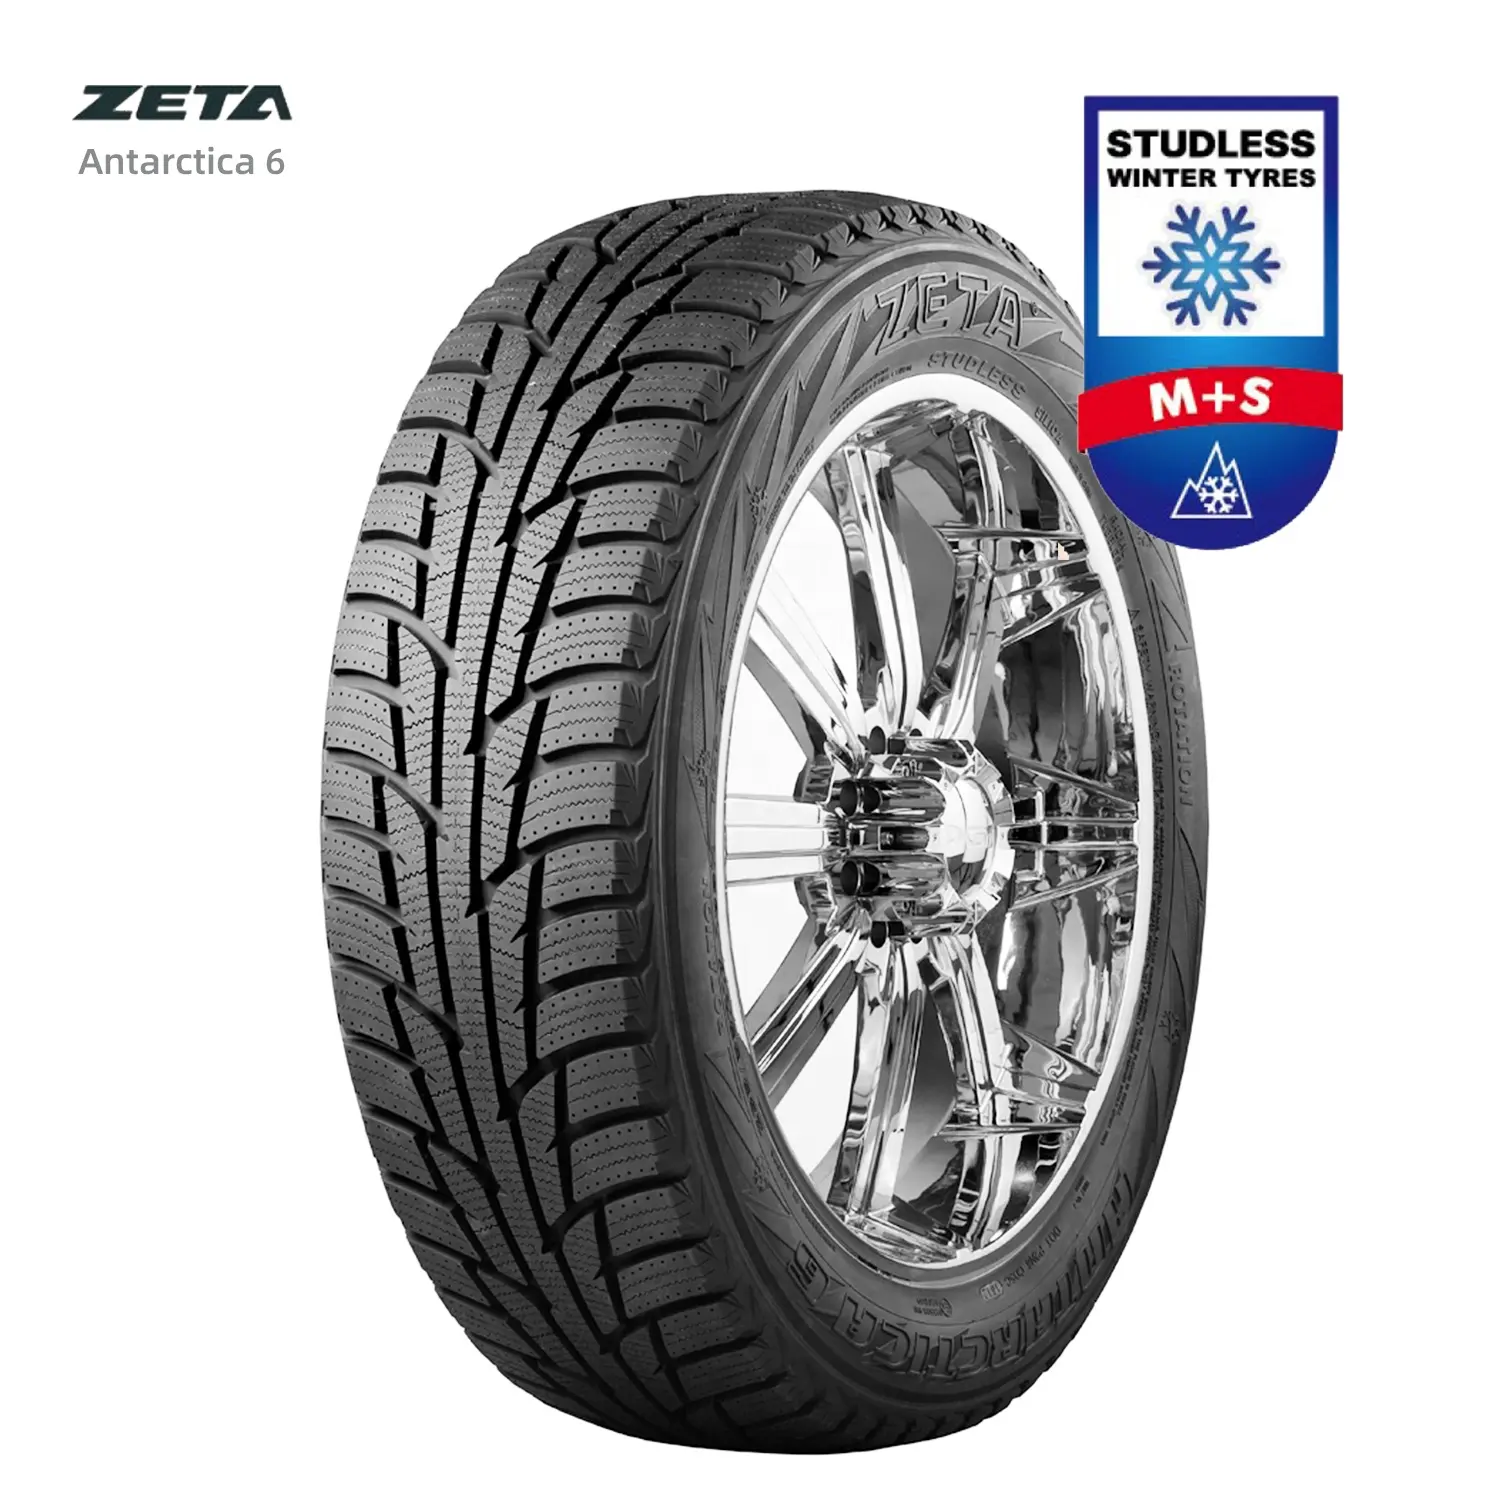 Neumáticos Studable de invierno para 205 55 16 ZETA PACE brandAntarctica 6 ECE 5 años de garantía para Rusia